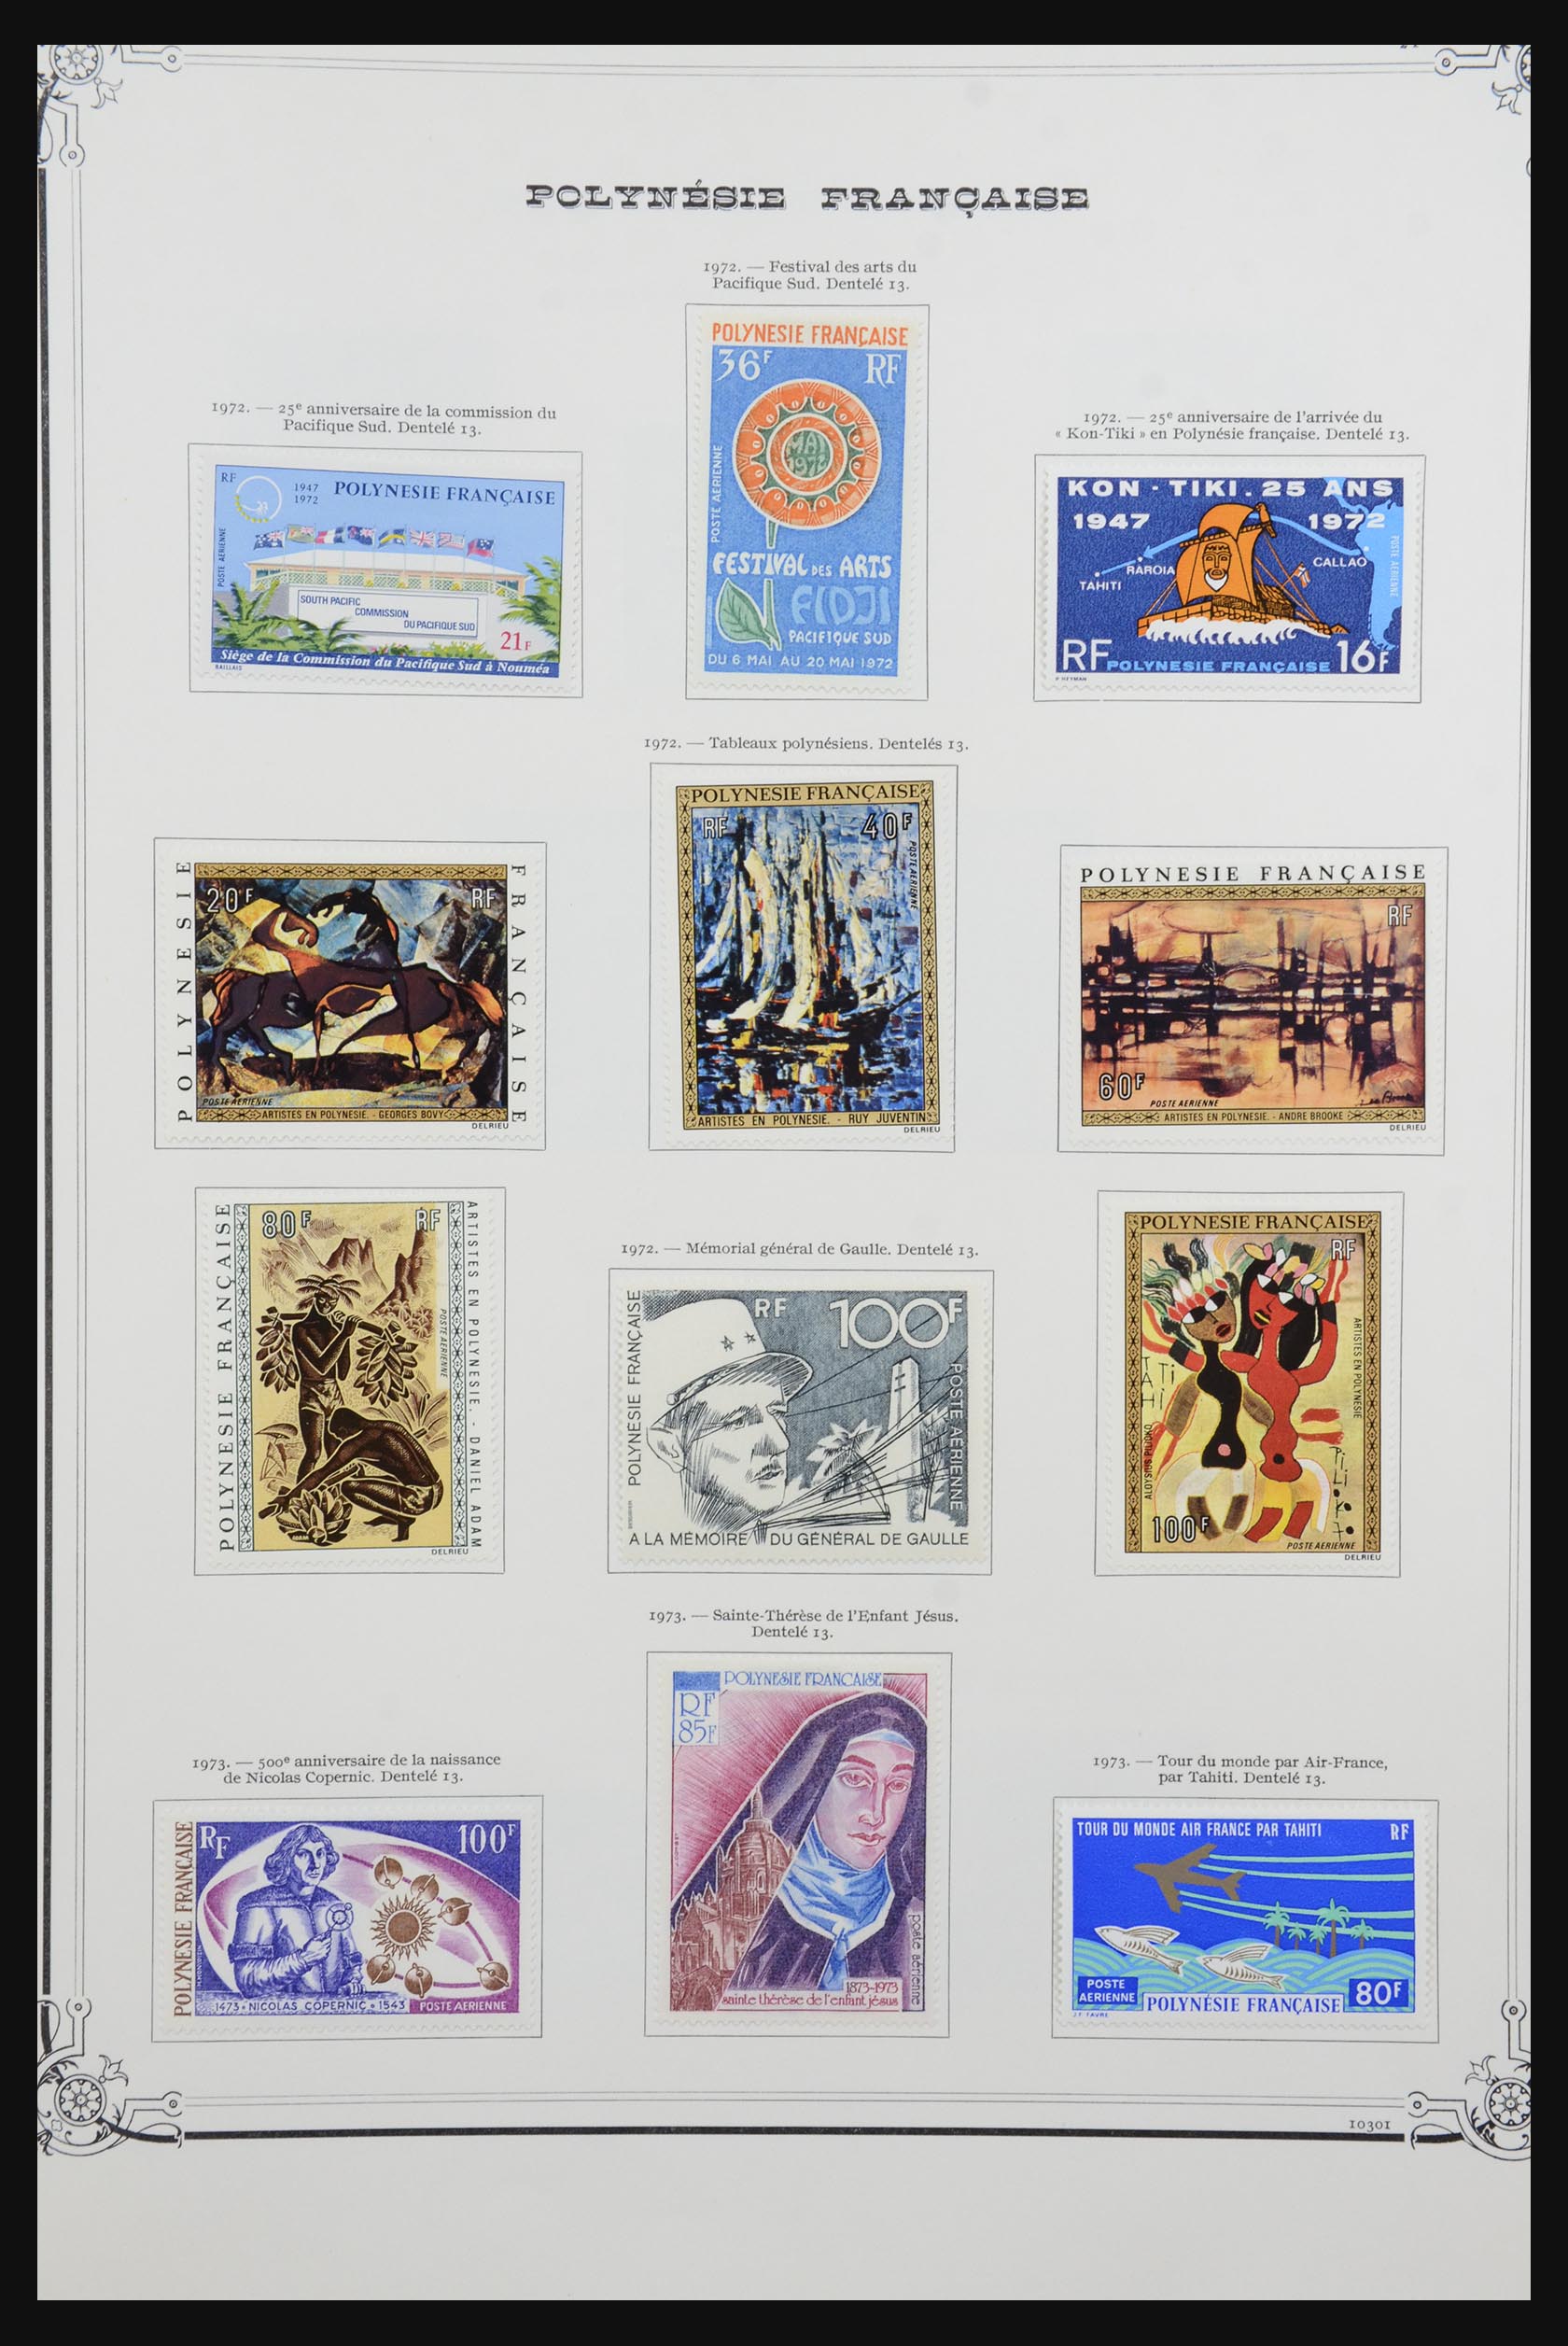 32229 021 - 32229 Polynesia 1958-1982.